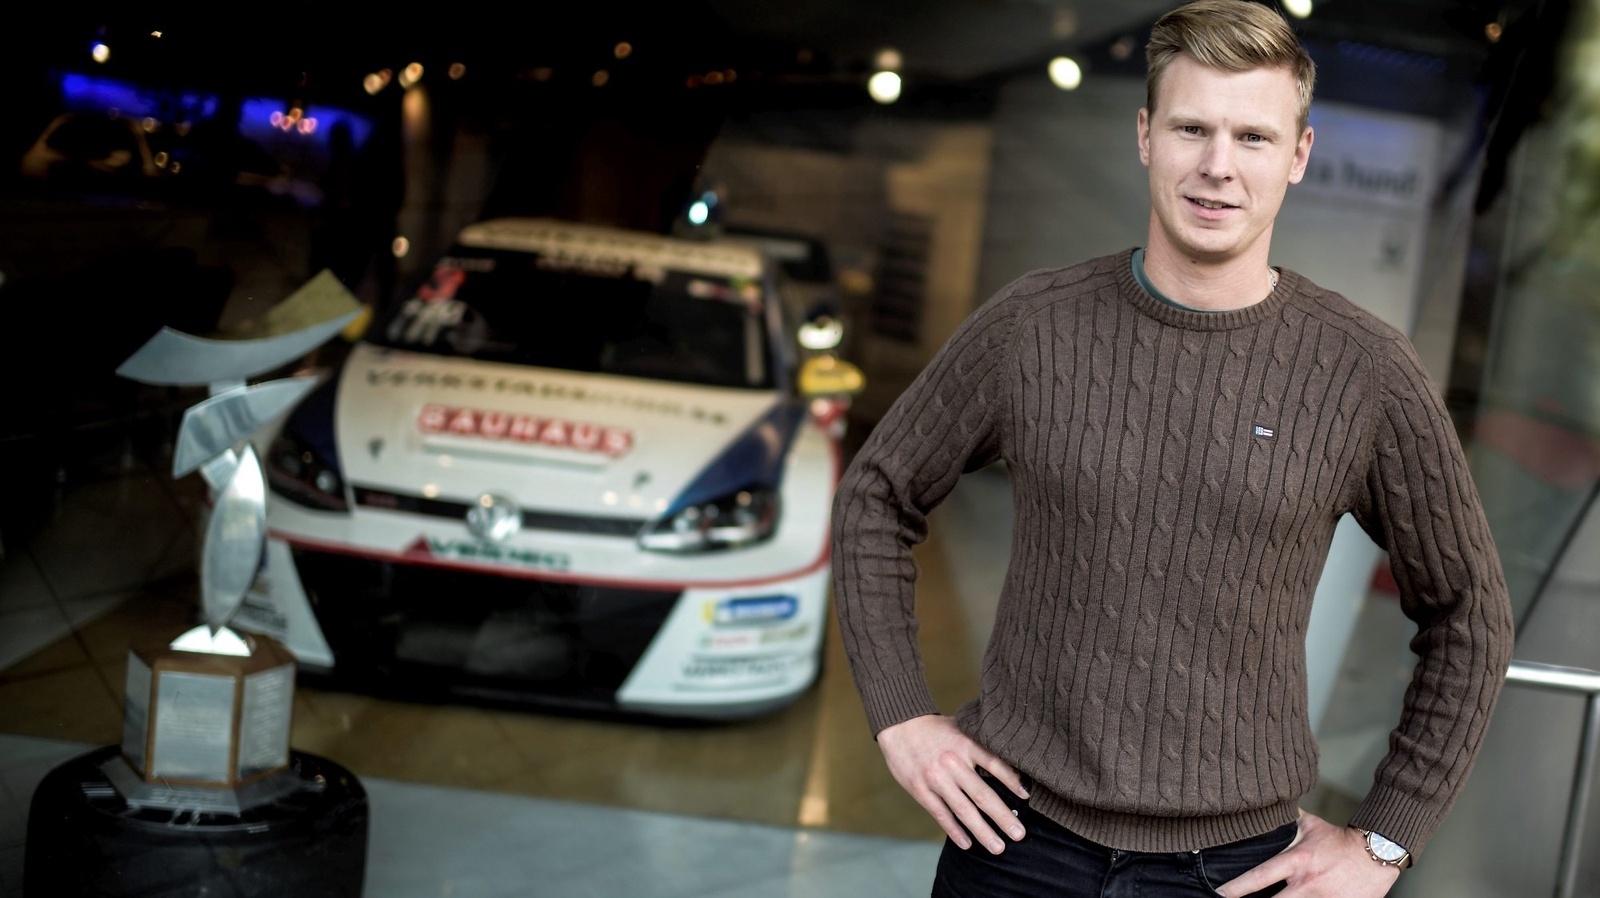 Motorsportstjärnan Johan Kristoffersson har de senaste åren närmast prenumererat på mästerskapstitlar. Privat tar Johan det lugnt bakom ratten.
Foto: Pontus Lundahl/TT